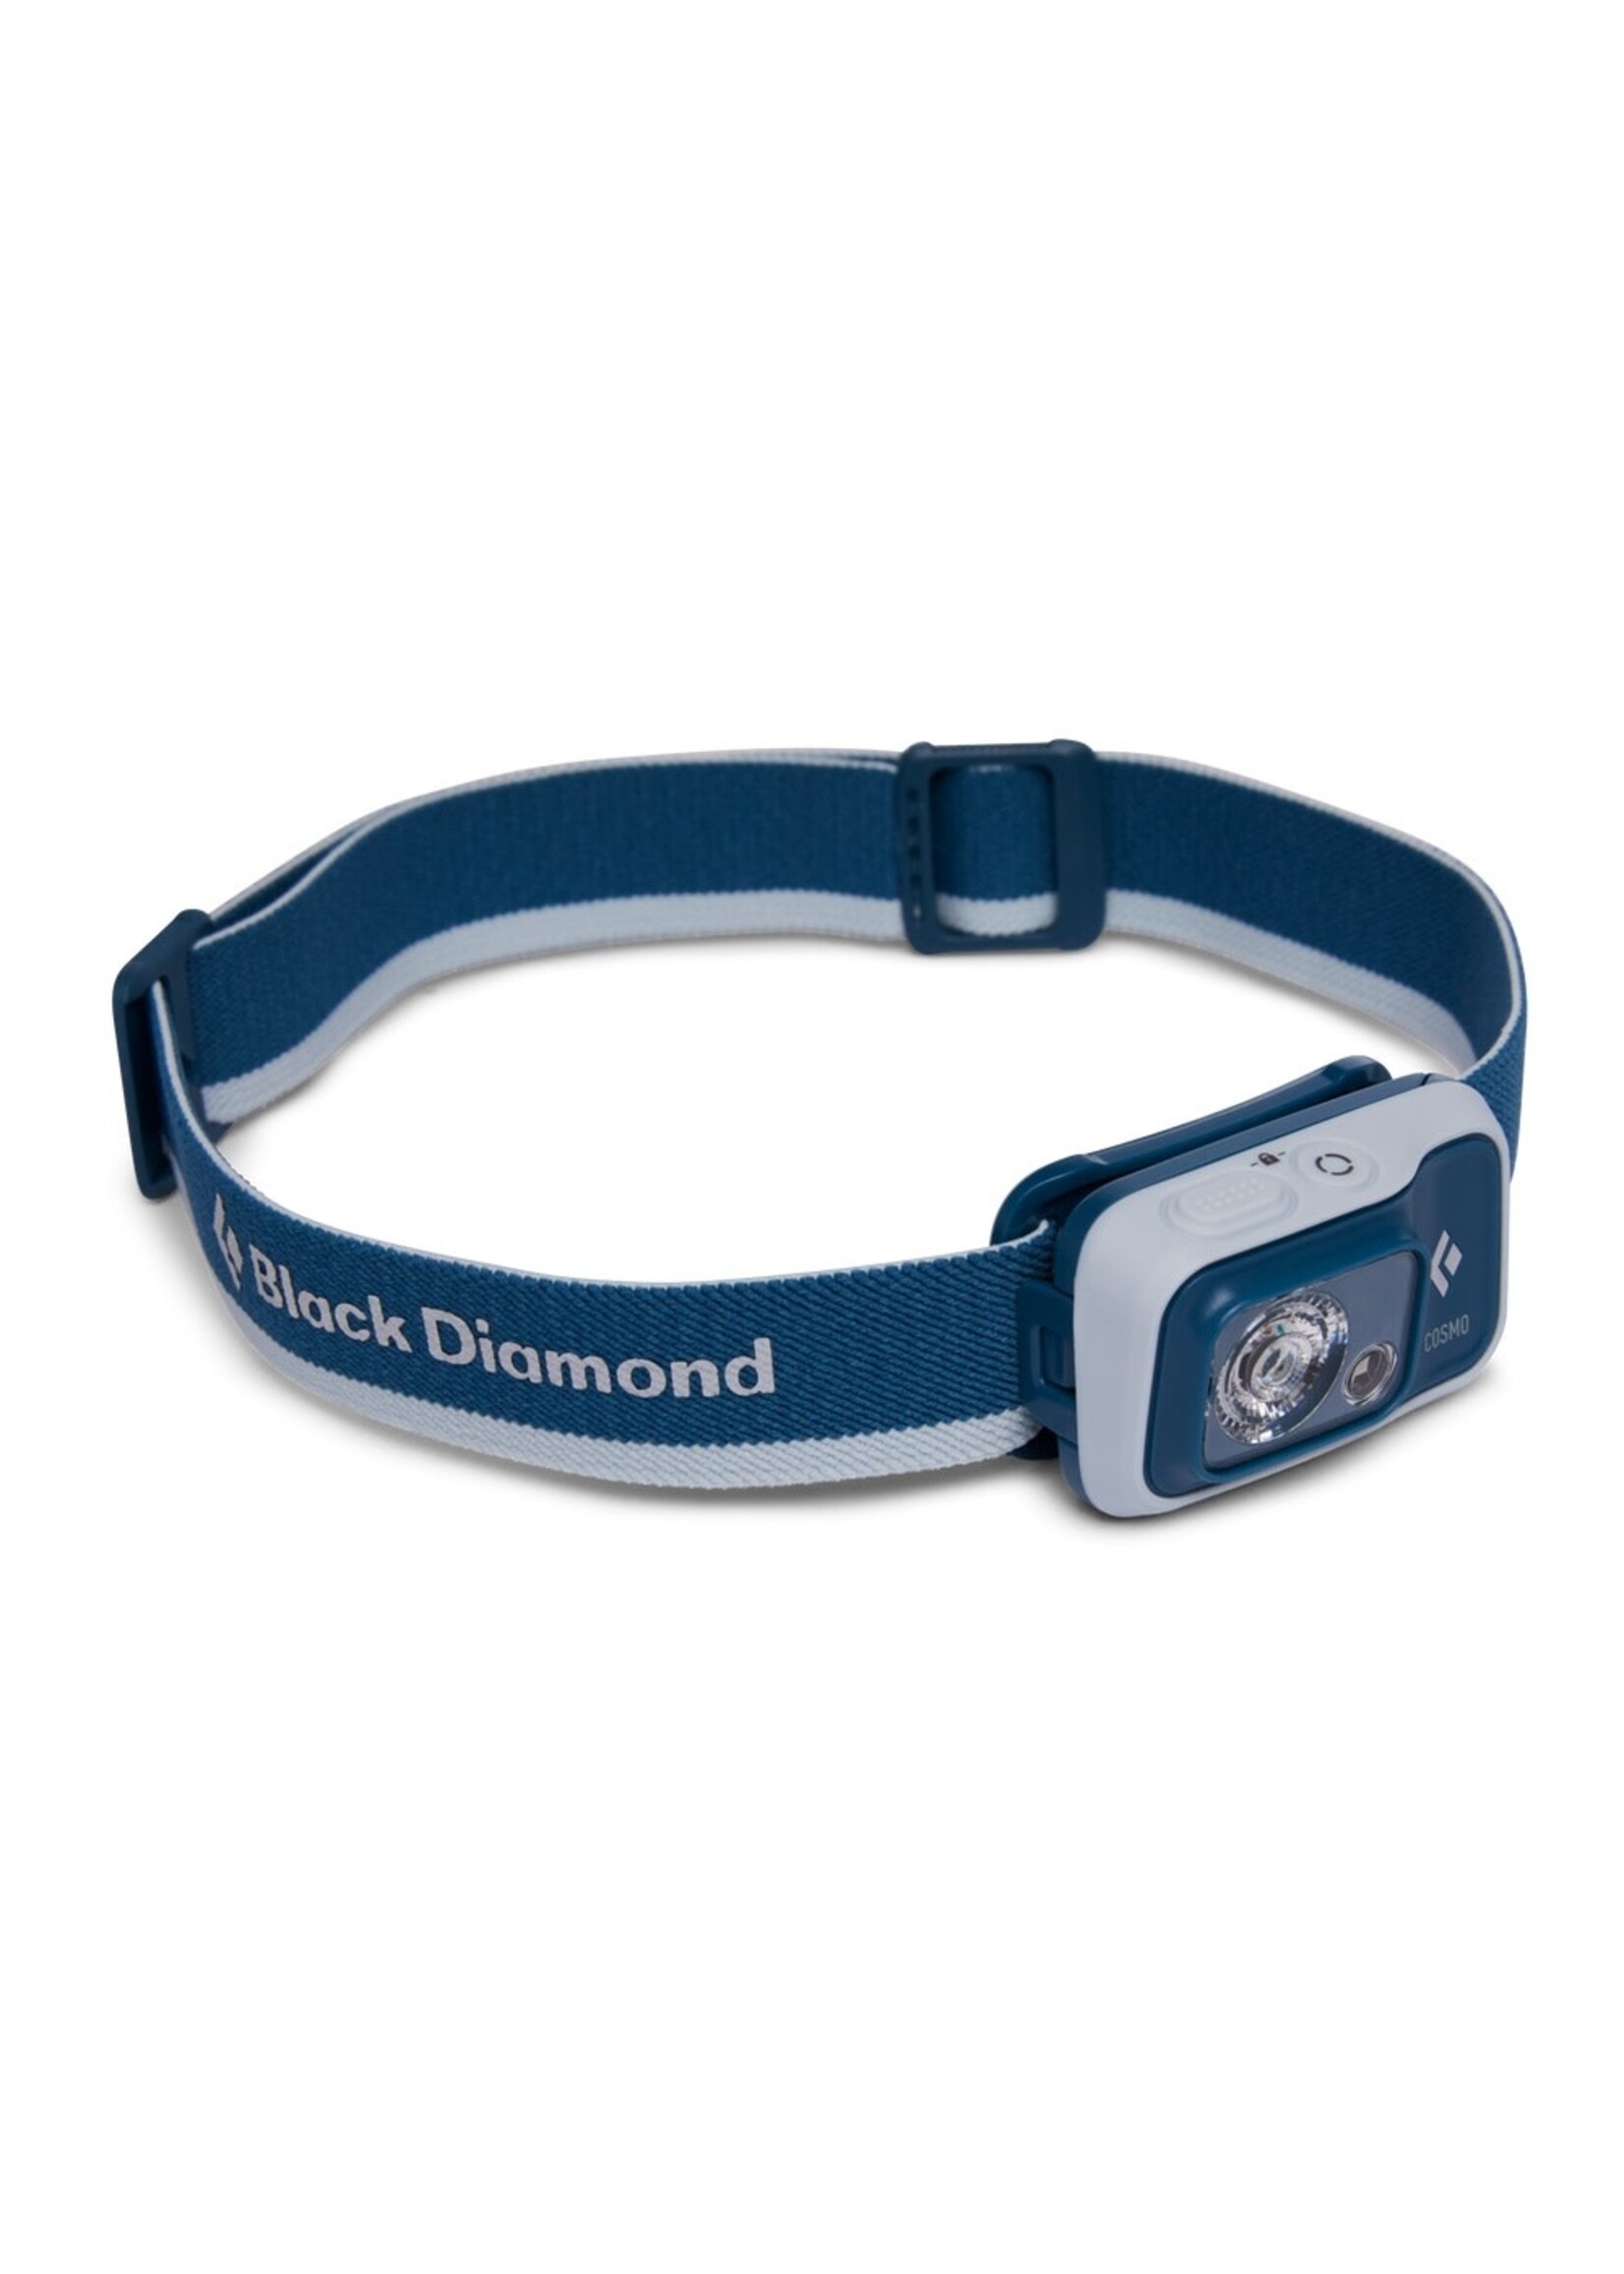 Black Diamond Black Diamond Cosmo 350 Headlamp